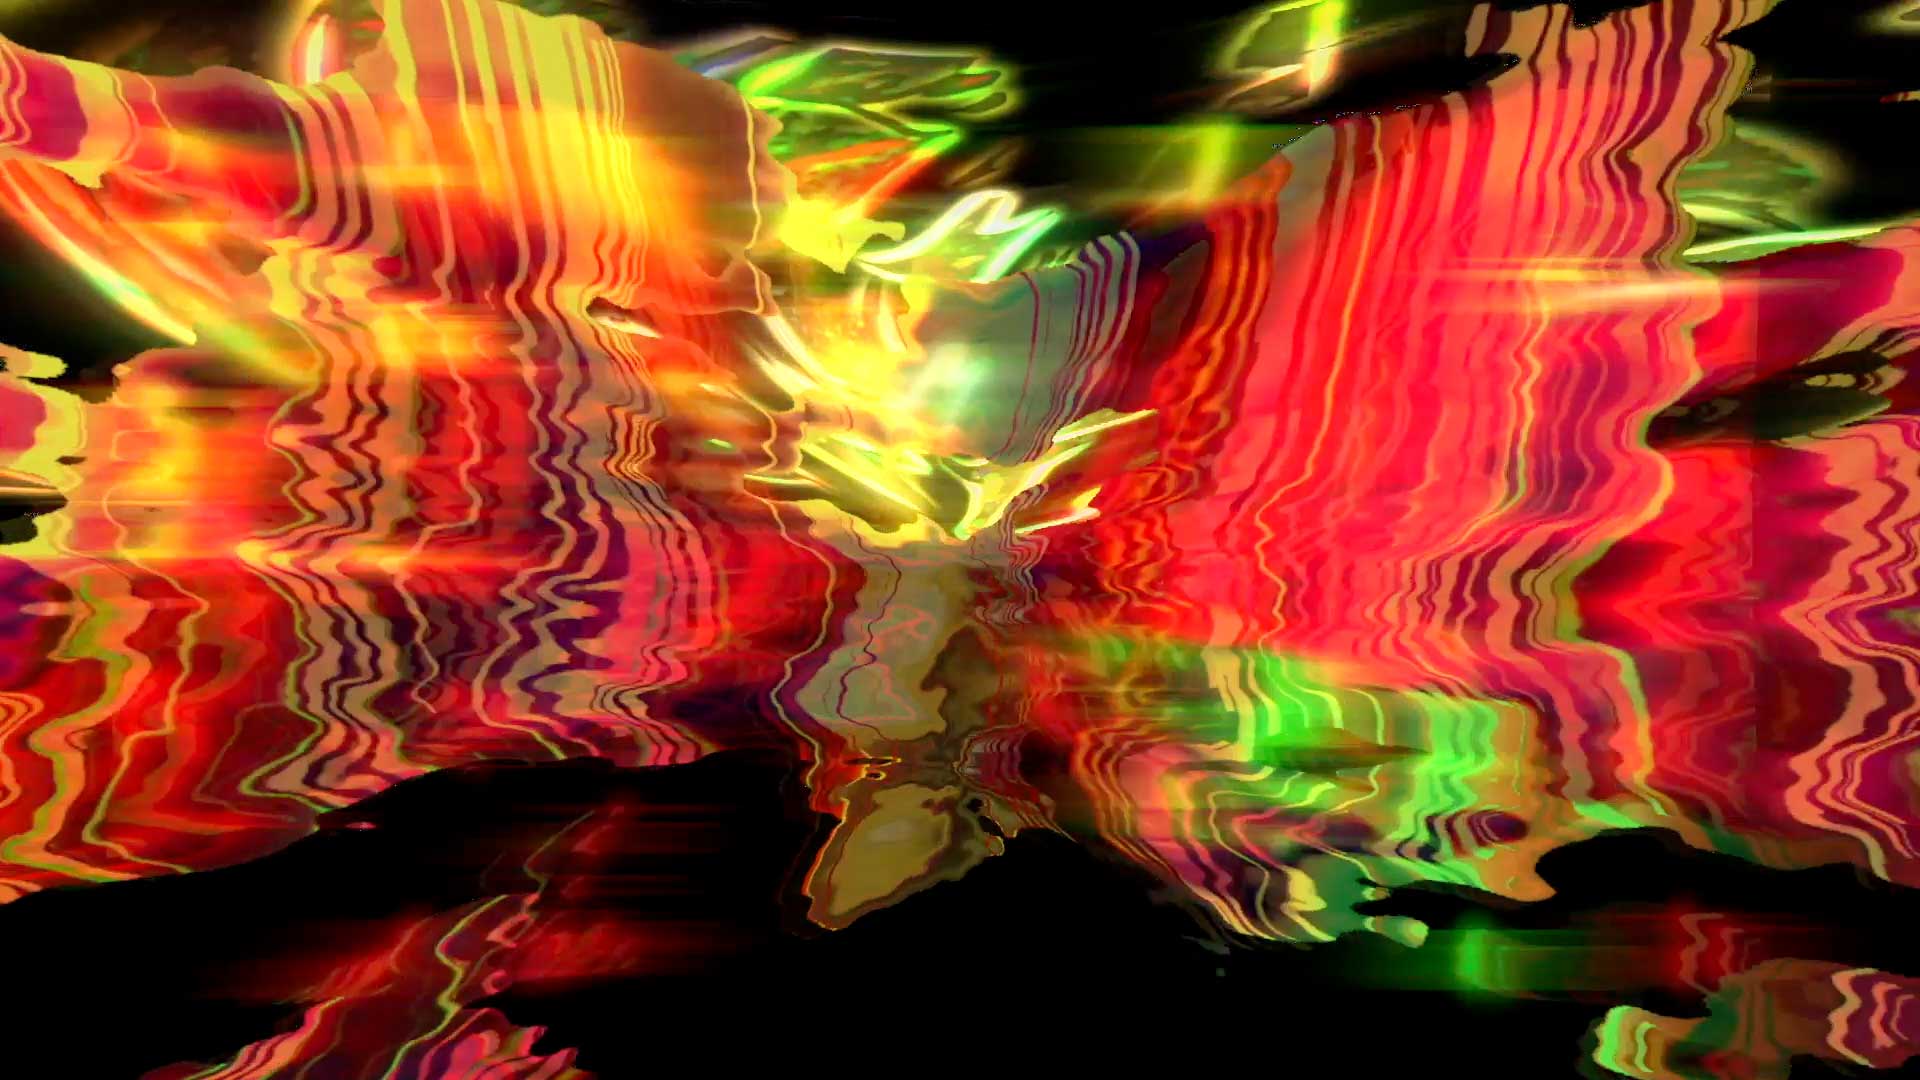 Susan Huang, Metamorphosis · Blooming, 2021. Digital video, 1920x1080 pixels. Duration: 02:18